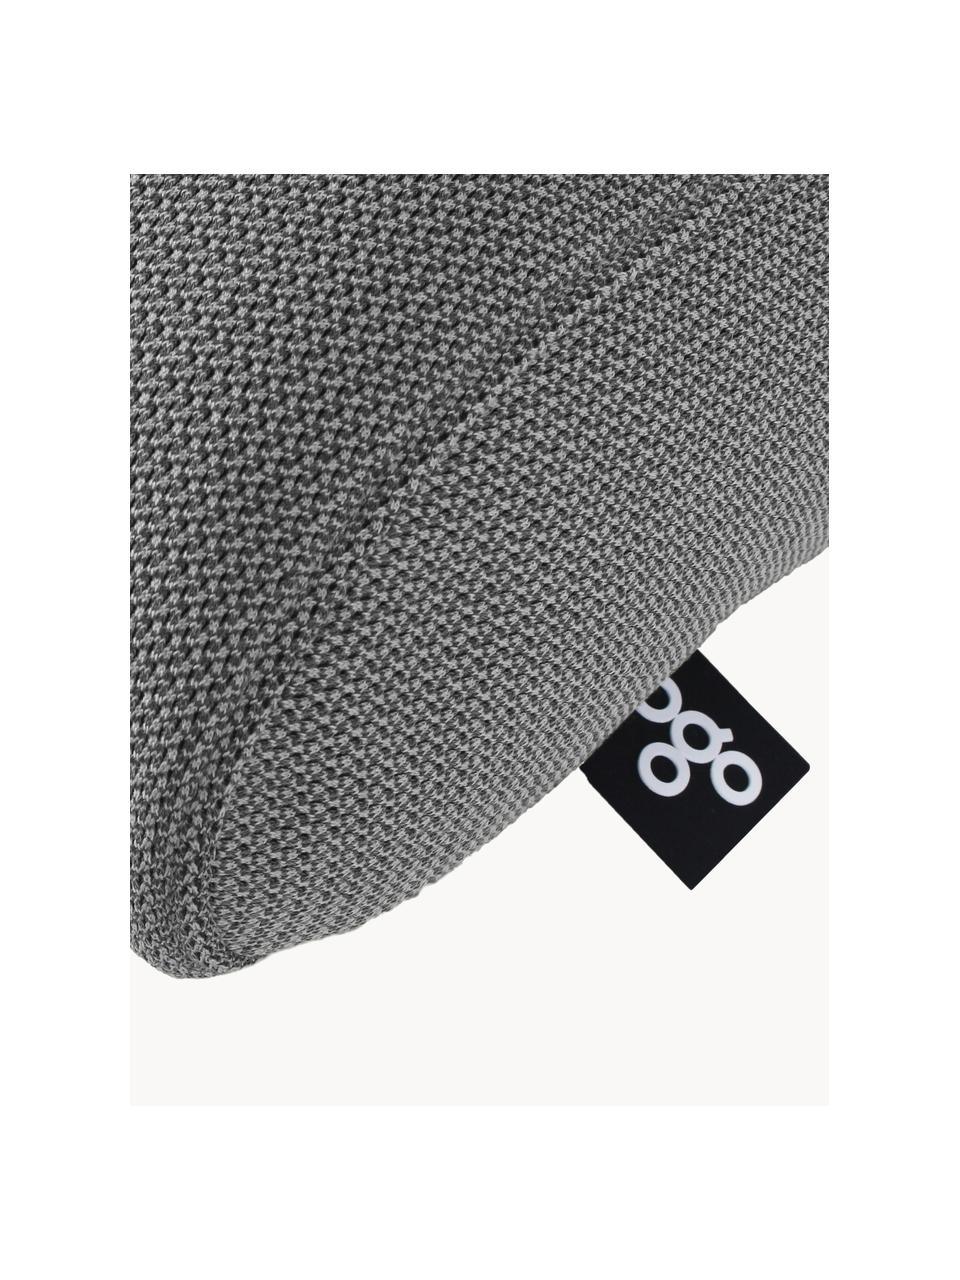 Handgefertigtes Outdoor-Kissen Pillow, Bezug: 70 % PAN + 30 % PES, wass, Dunkelgrau, B 50 x L 30 cm